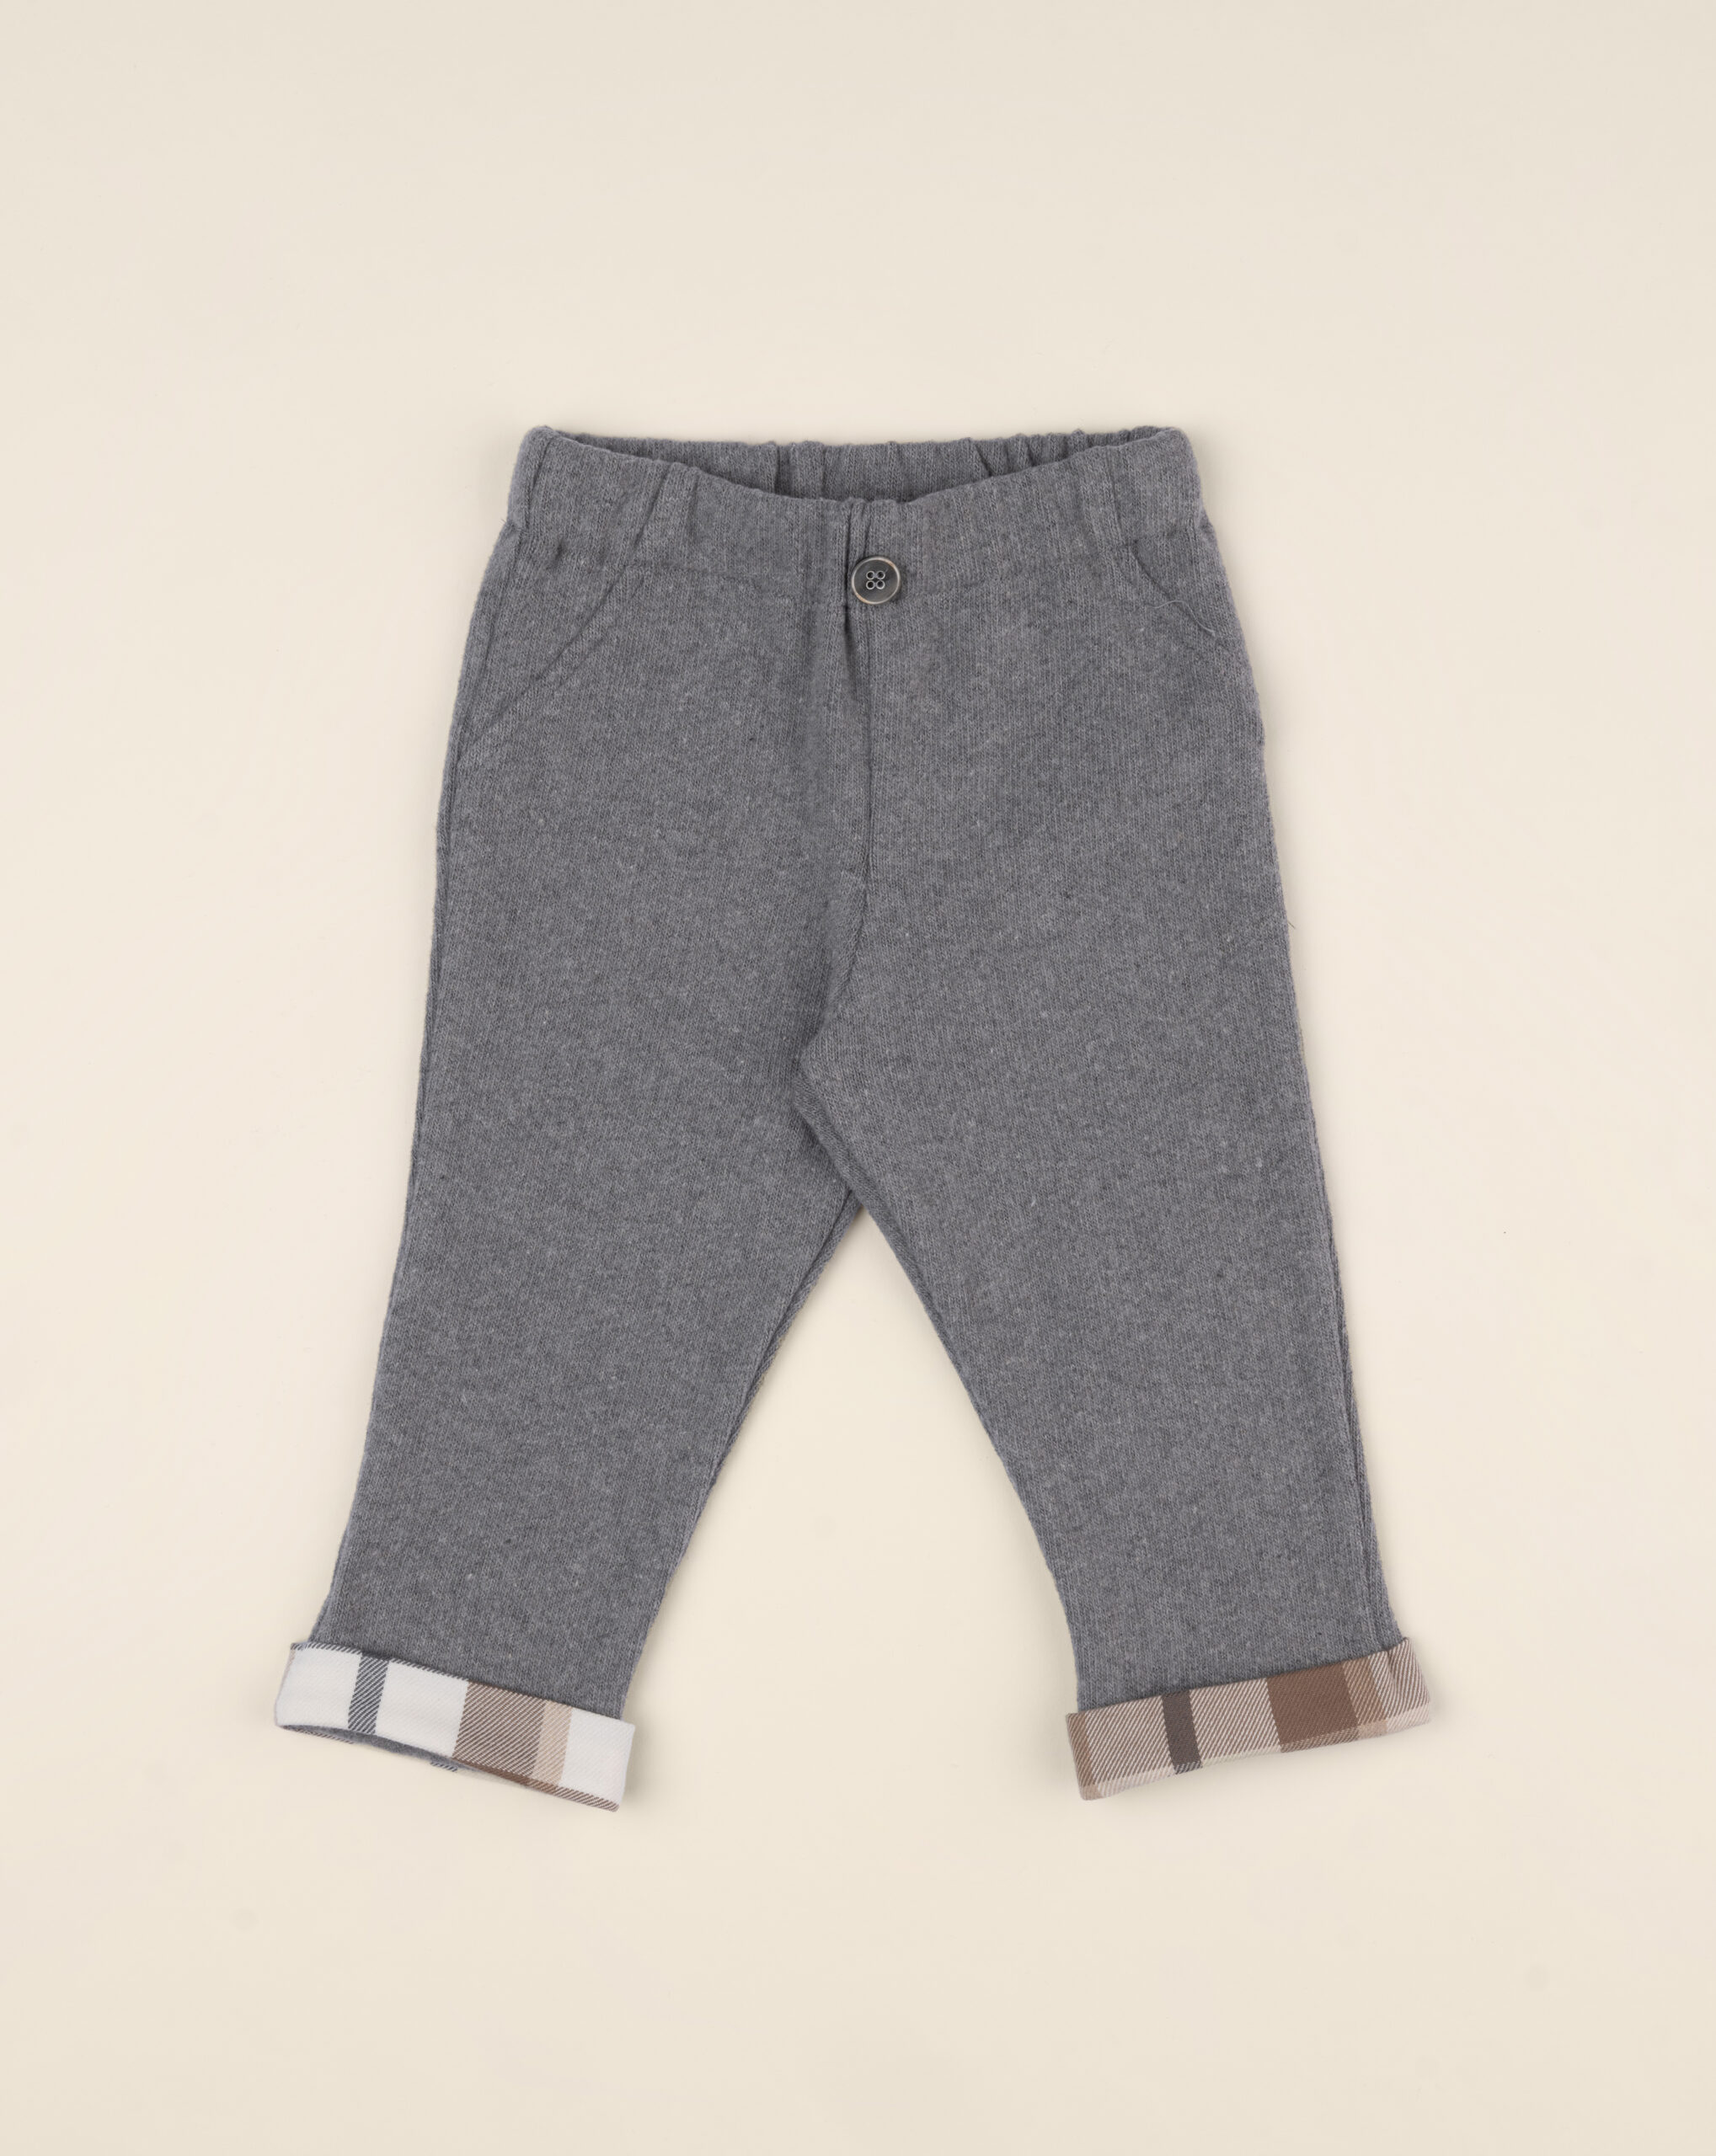 Sudadera pantalón niño gris - Prénatal